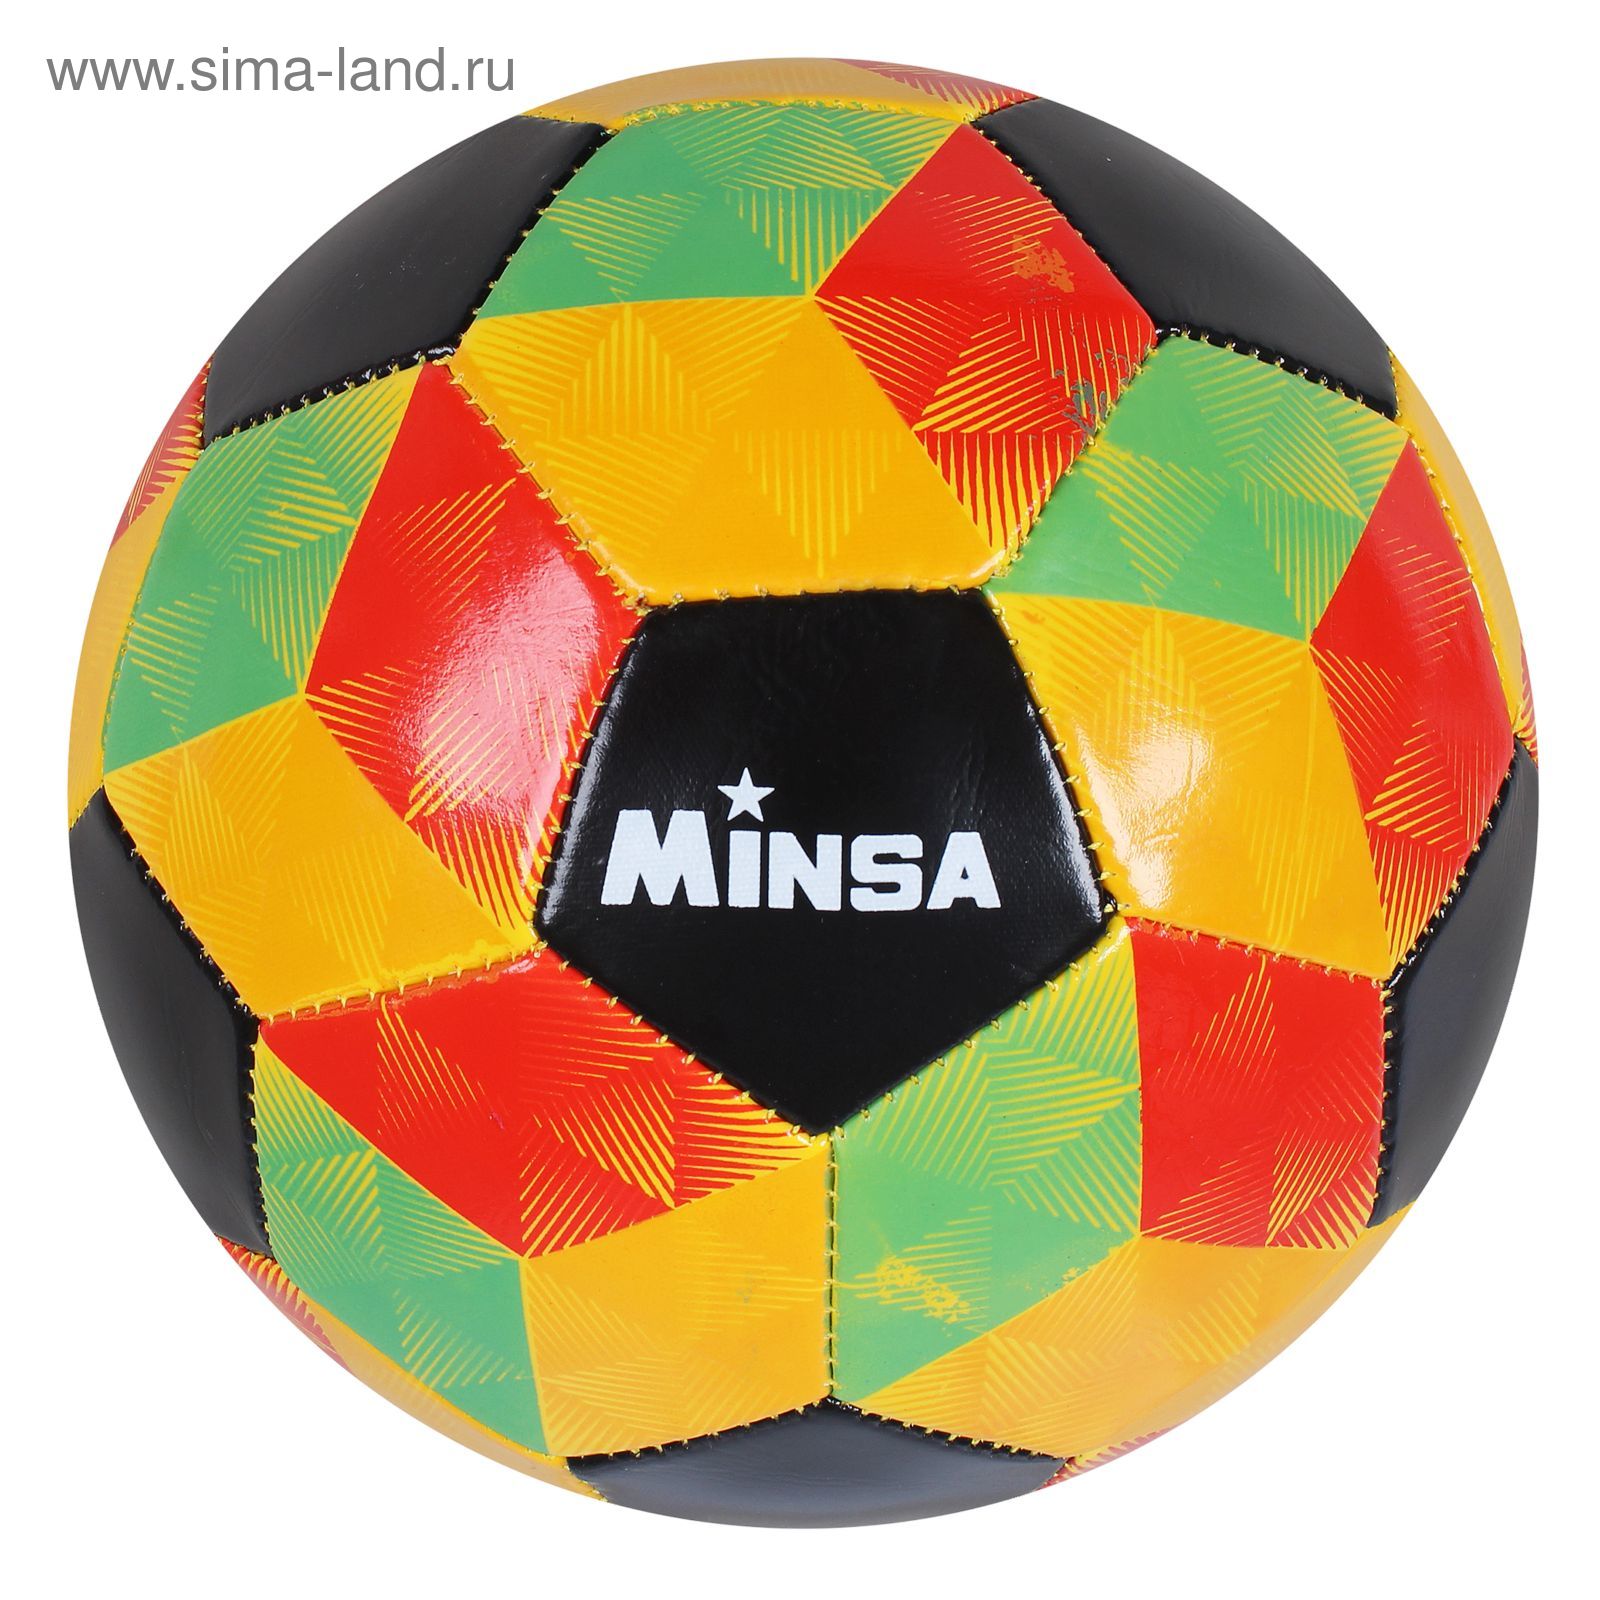 Мяч футбольный Minsa F15, 32 панели, PVC, 2 подслоя, машинная сшивка, размер 5